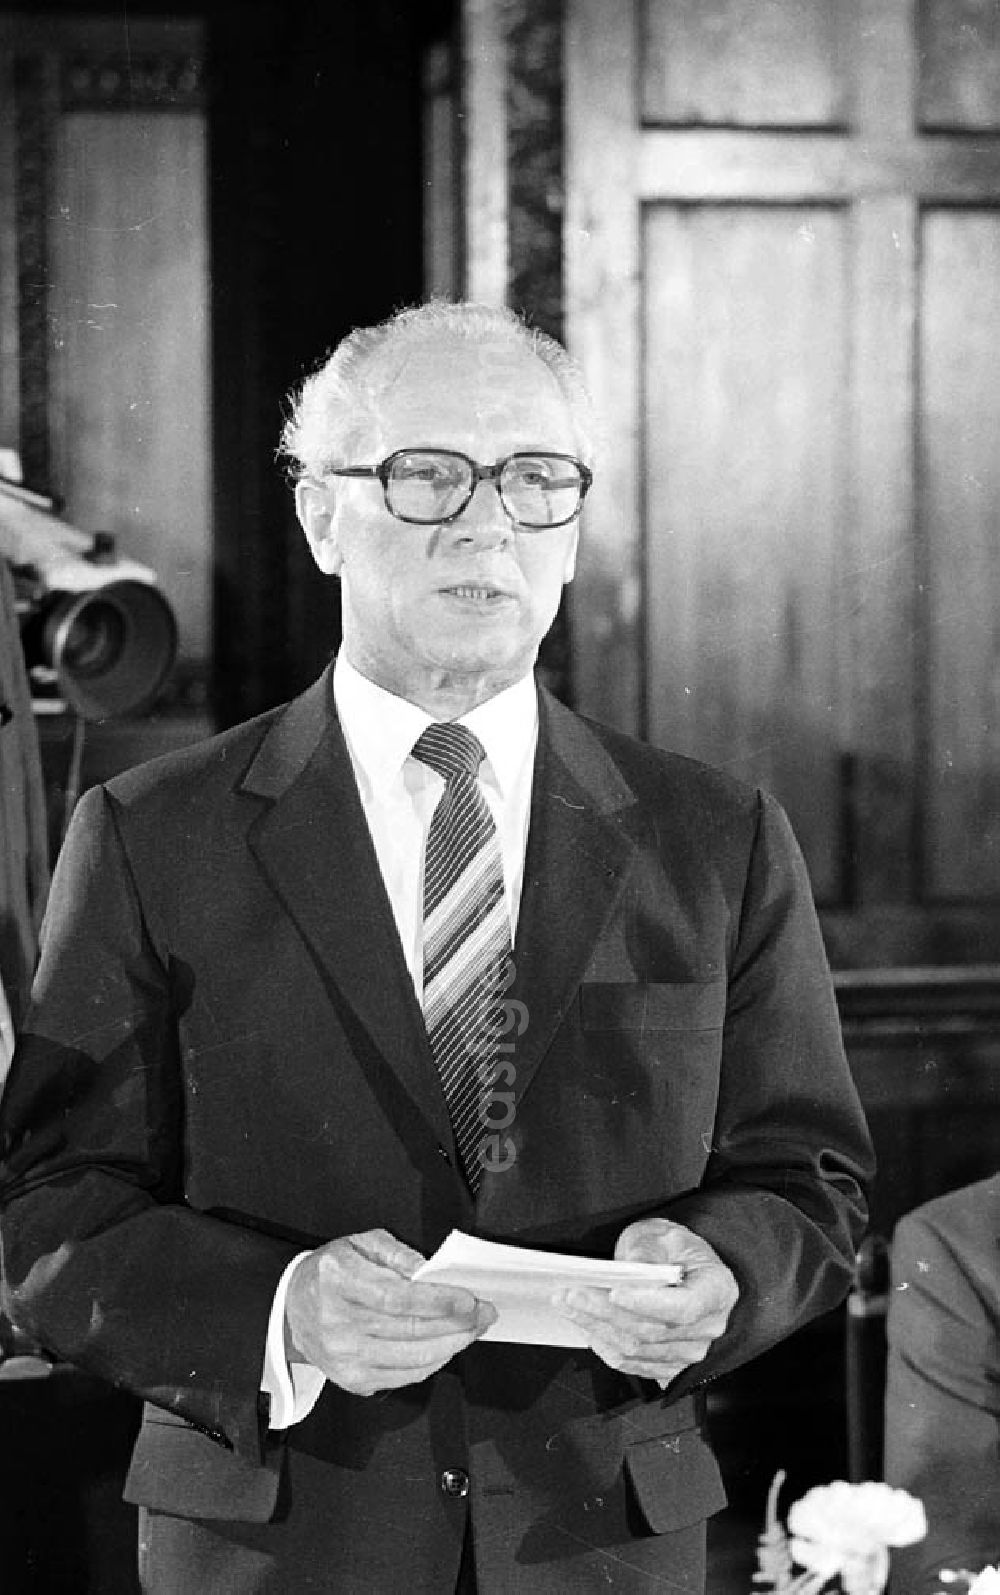 GDR image archive: Budapest (Ungarn) - Der Partei- und Staatschef der DDR, Erich Honecker, während einer Ansprache anläßlich seines Besuches in Budapest, Ungarn.